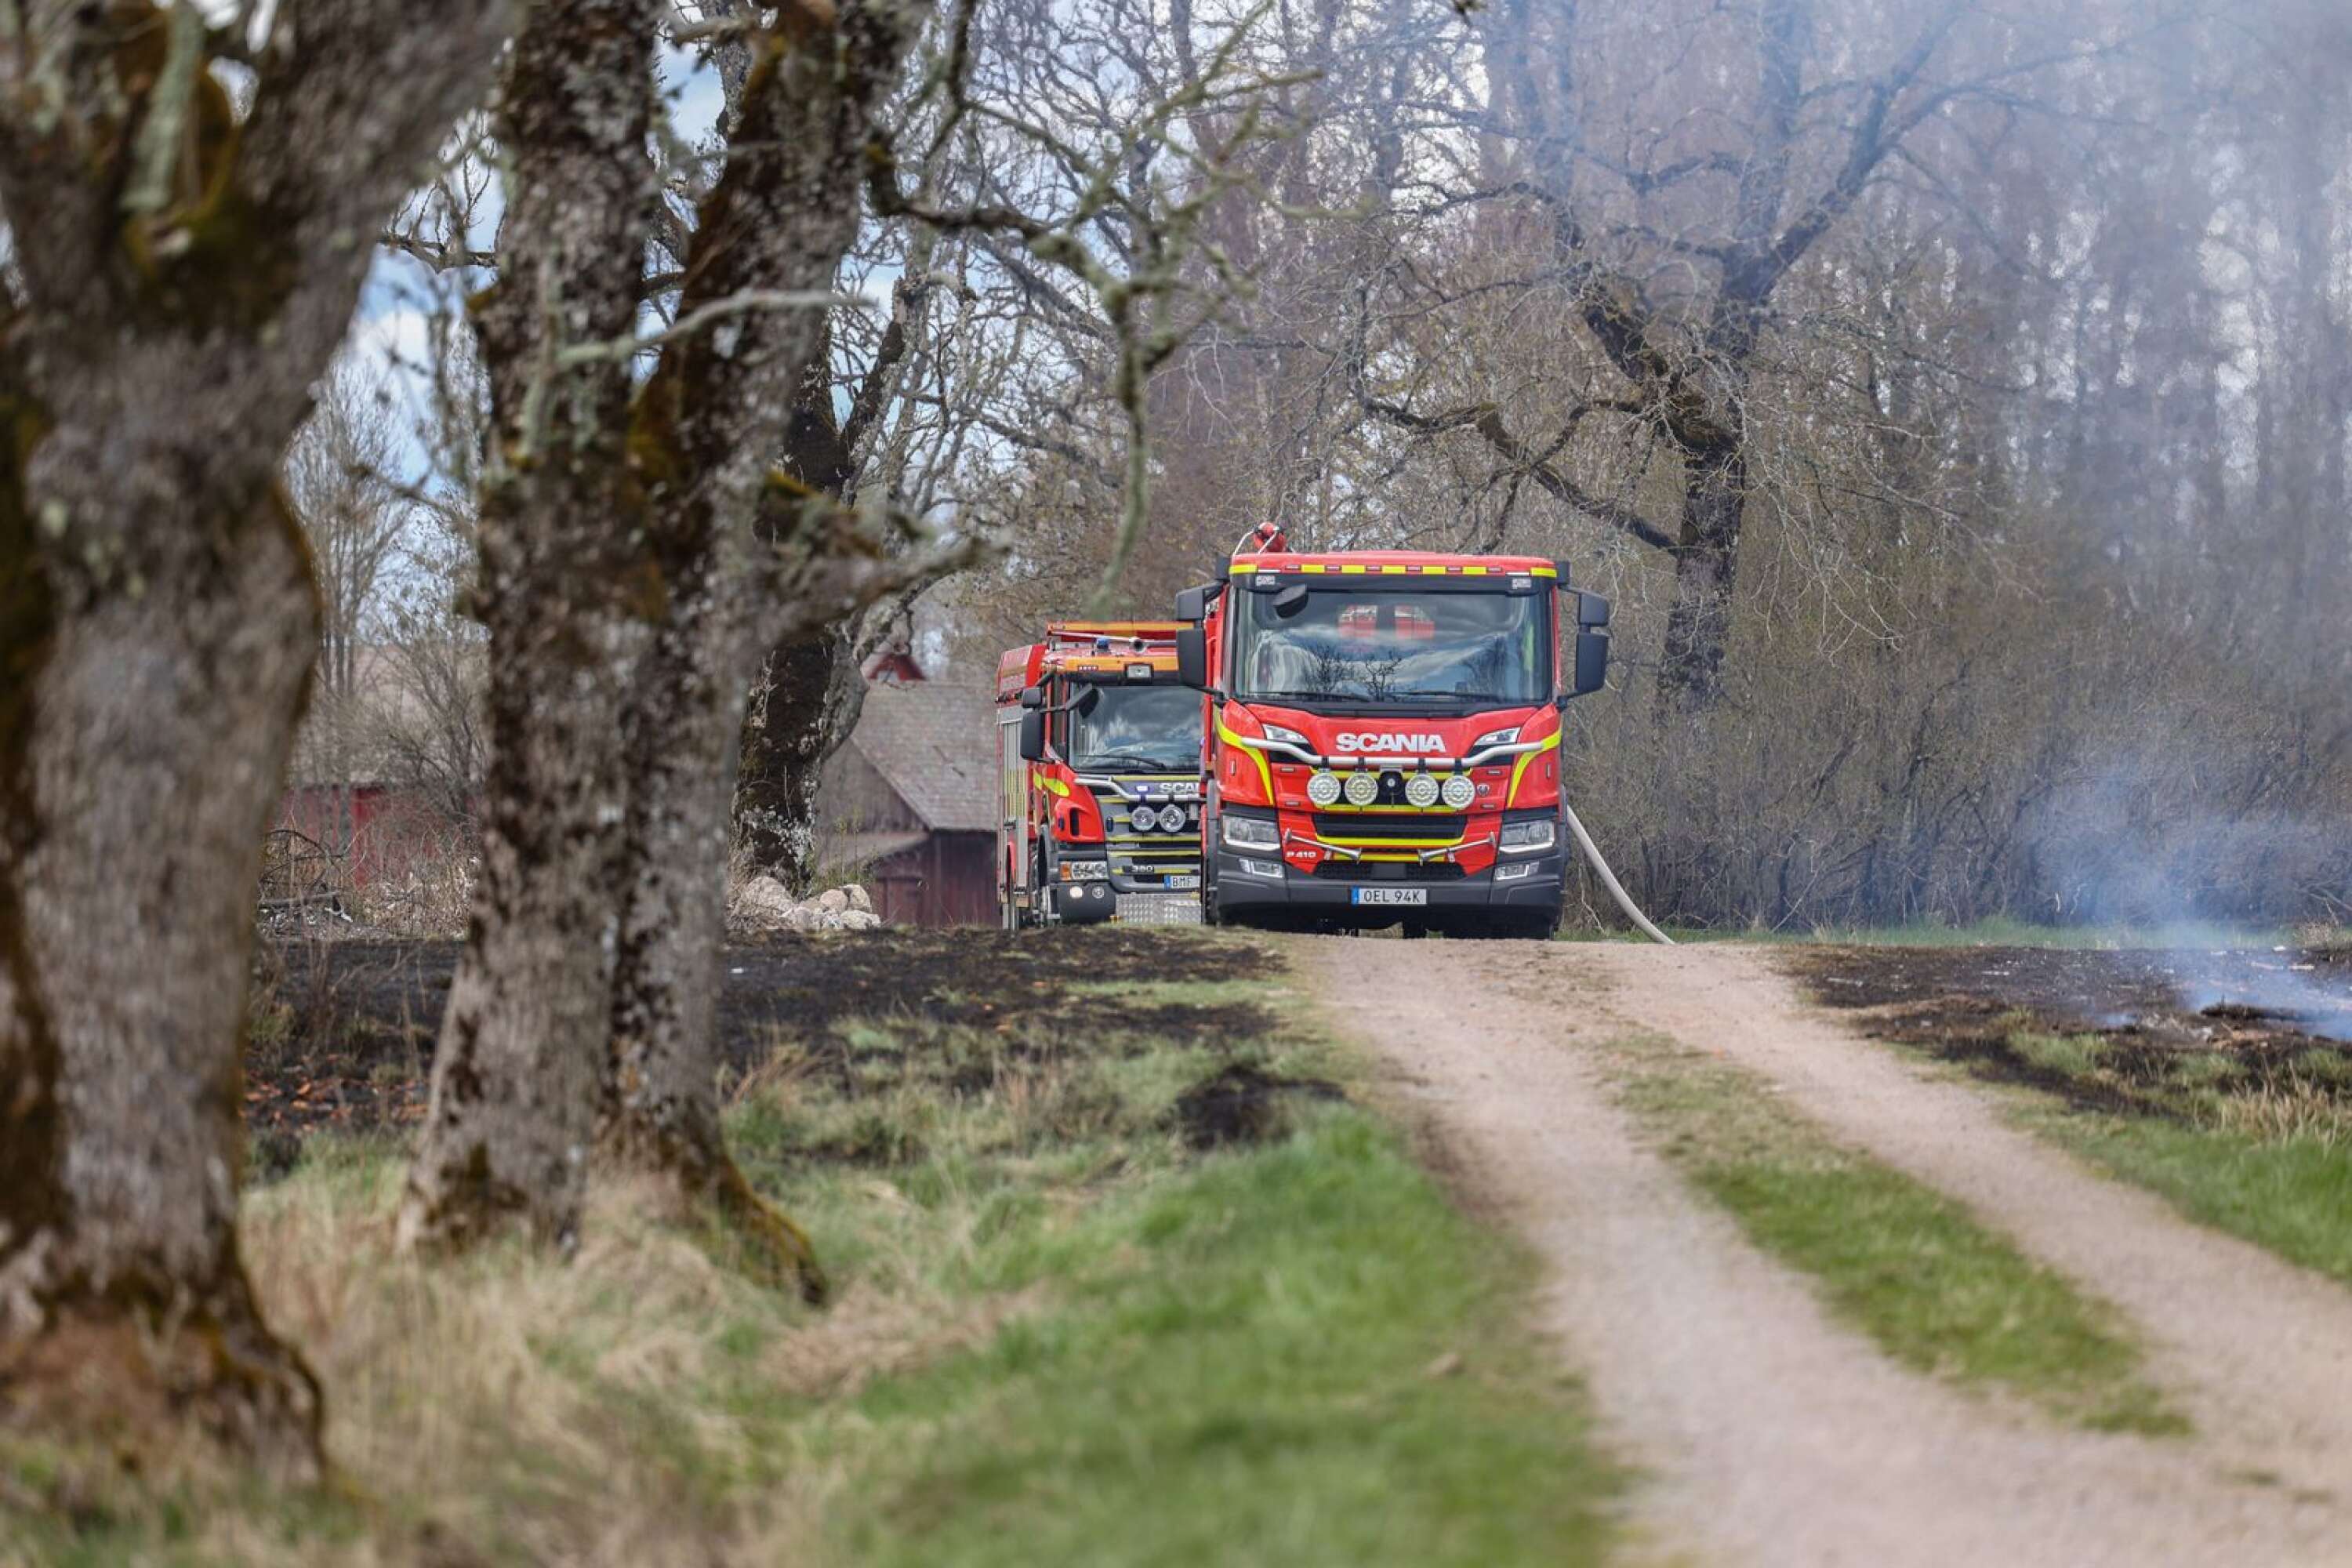 Räddningstjänsten skickade enheter från Brålanda, Mellerud och Vänersborg till brandplatsen.